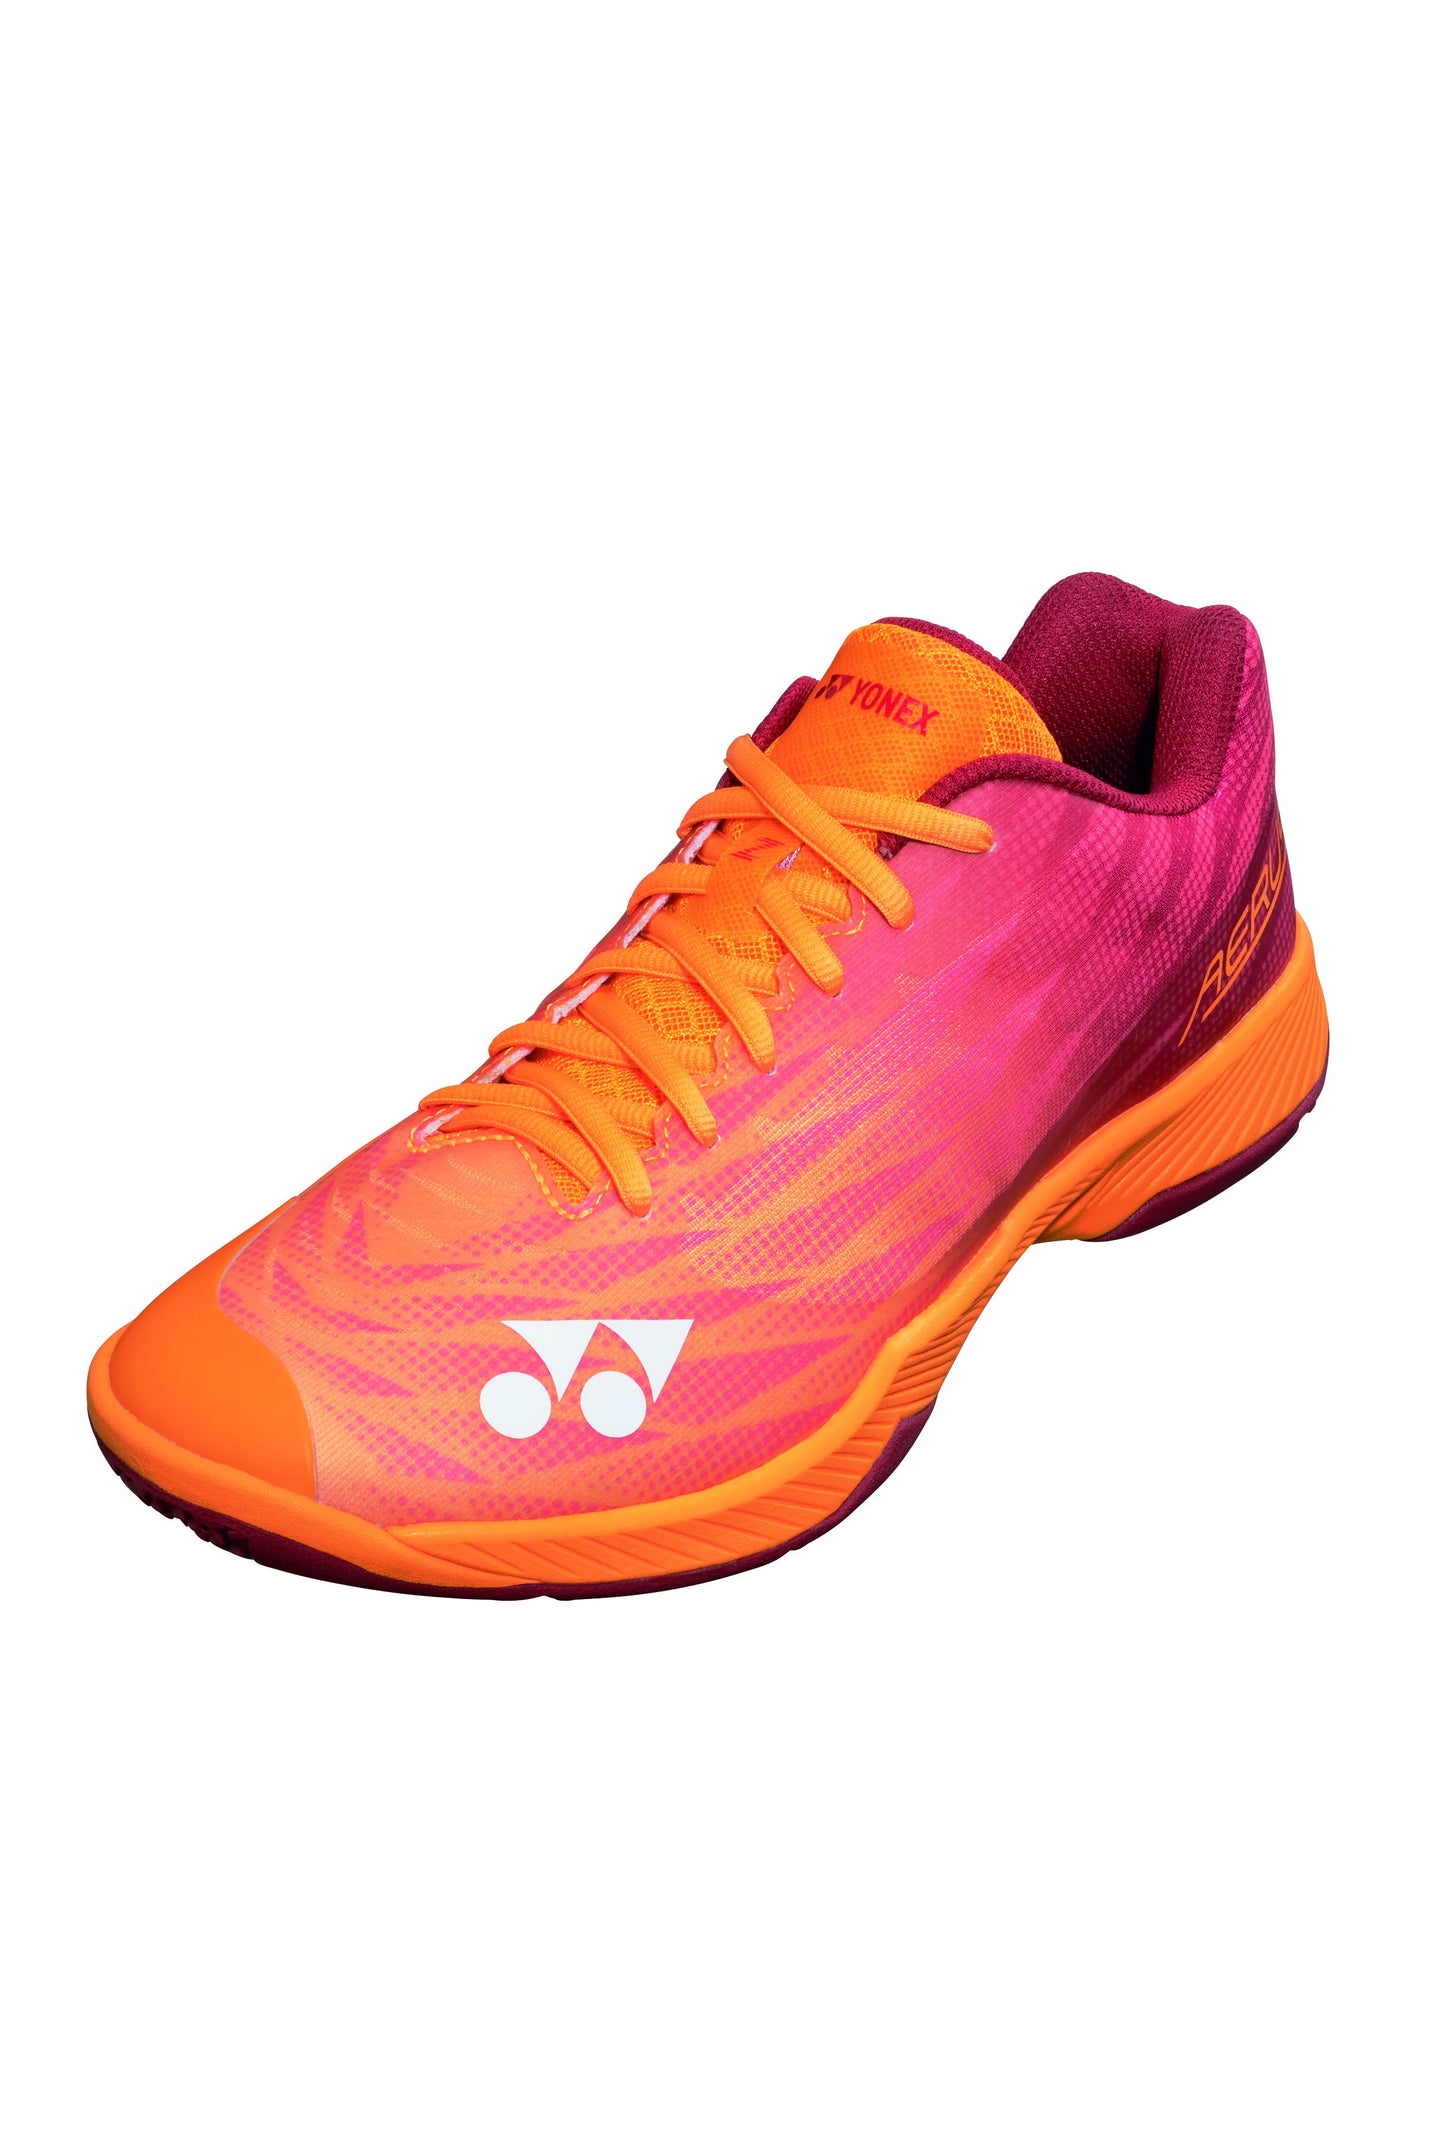 YONEX Badminton Shoes POWER CUSHION AERUS Z2 MENS [Orange Red] - Max Sports